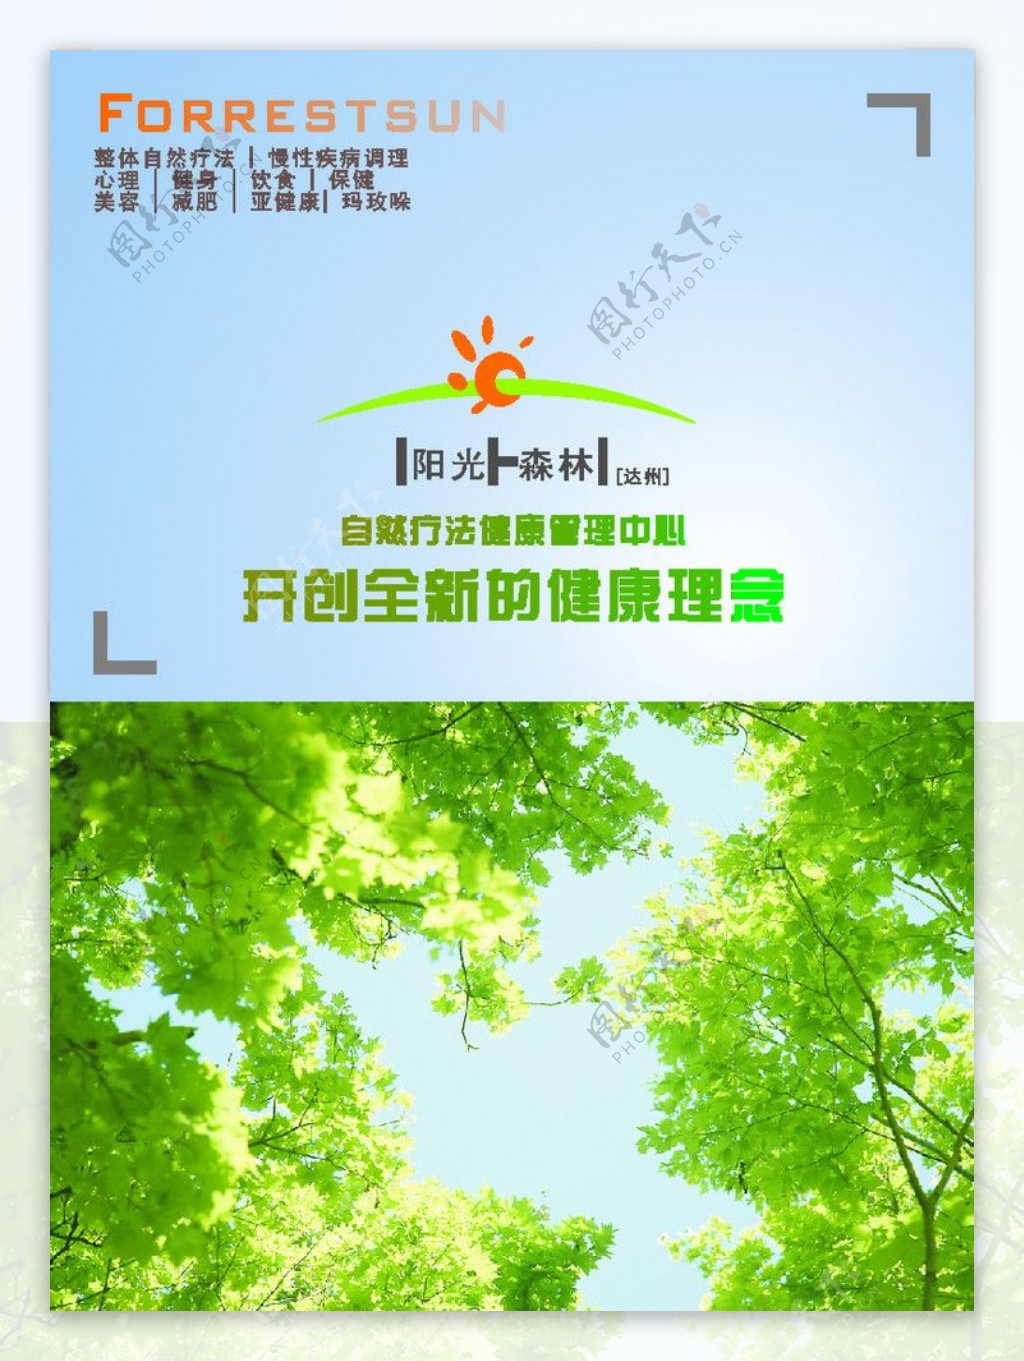 阳光森林画册封面图片